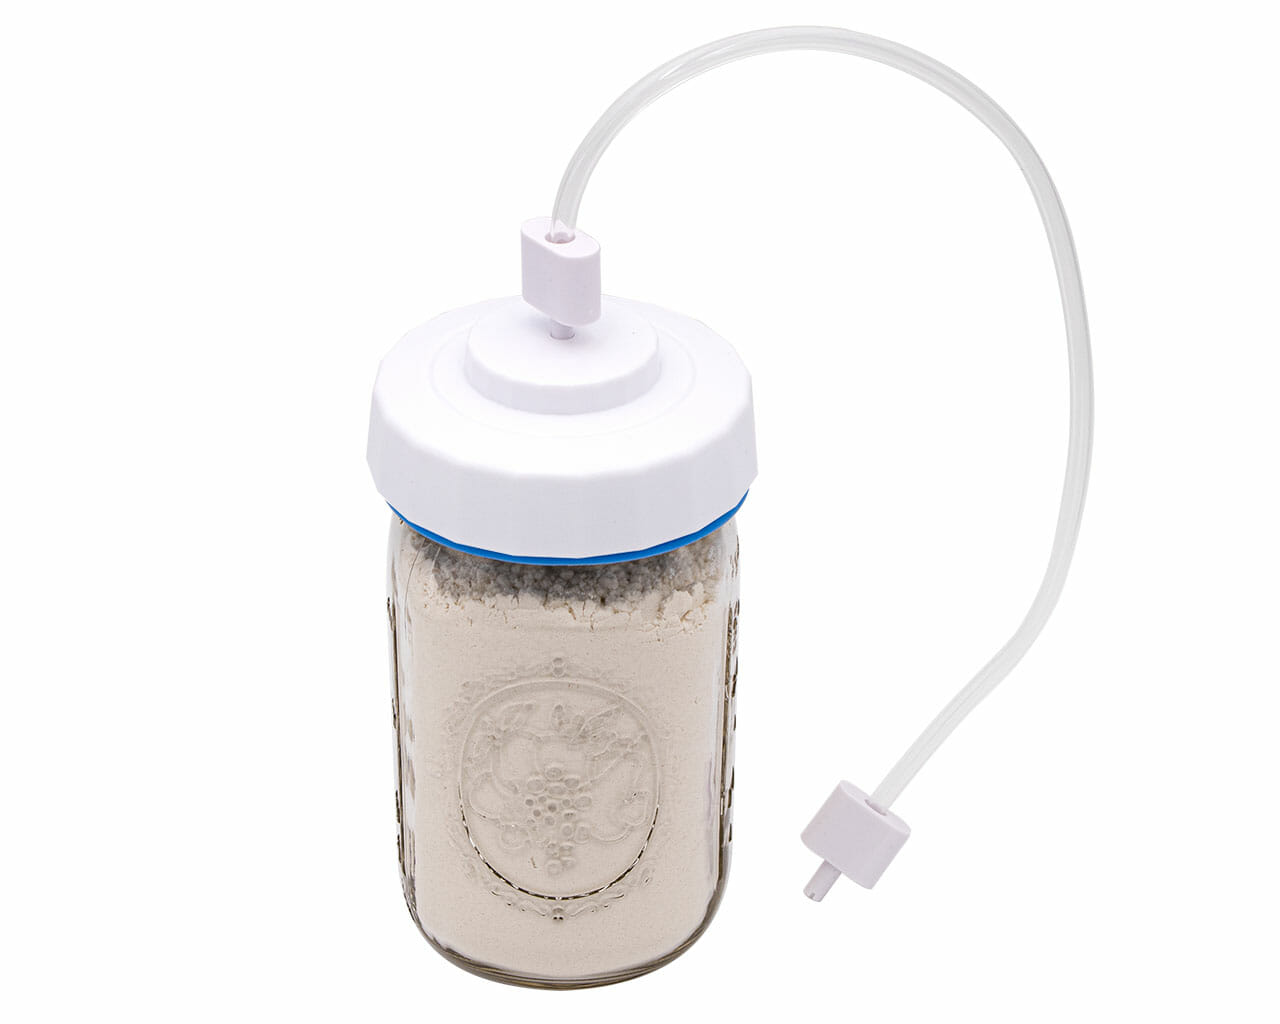 1 Set Jar Sealer Kits For Food Saver Vacuum Sealer, Upgrade Canning Sealer  Set With Hoses For Mason Jars With Regular And Wide Mouth, Additional Conne